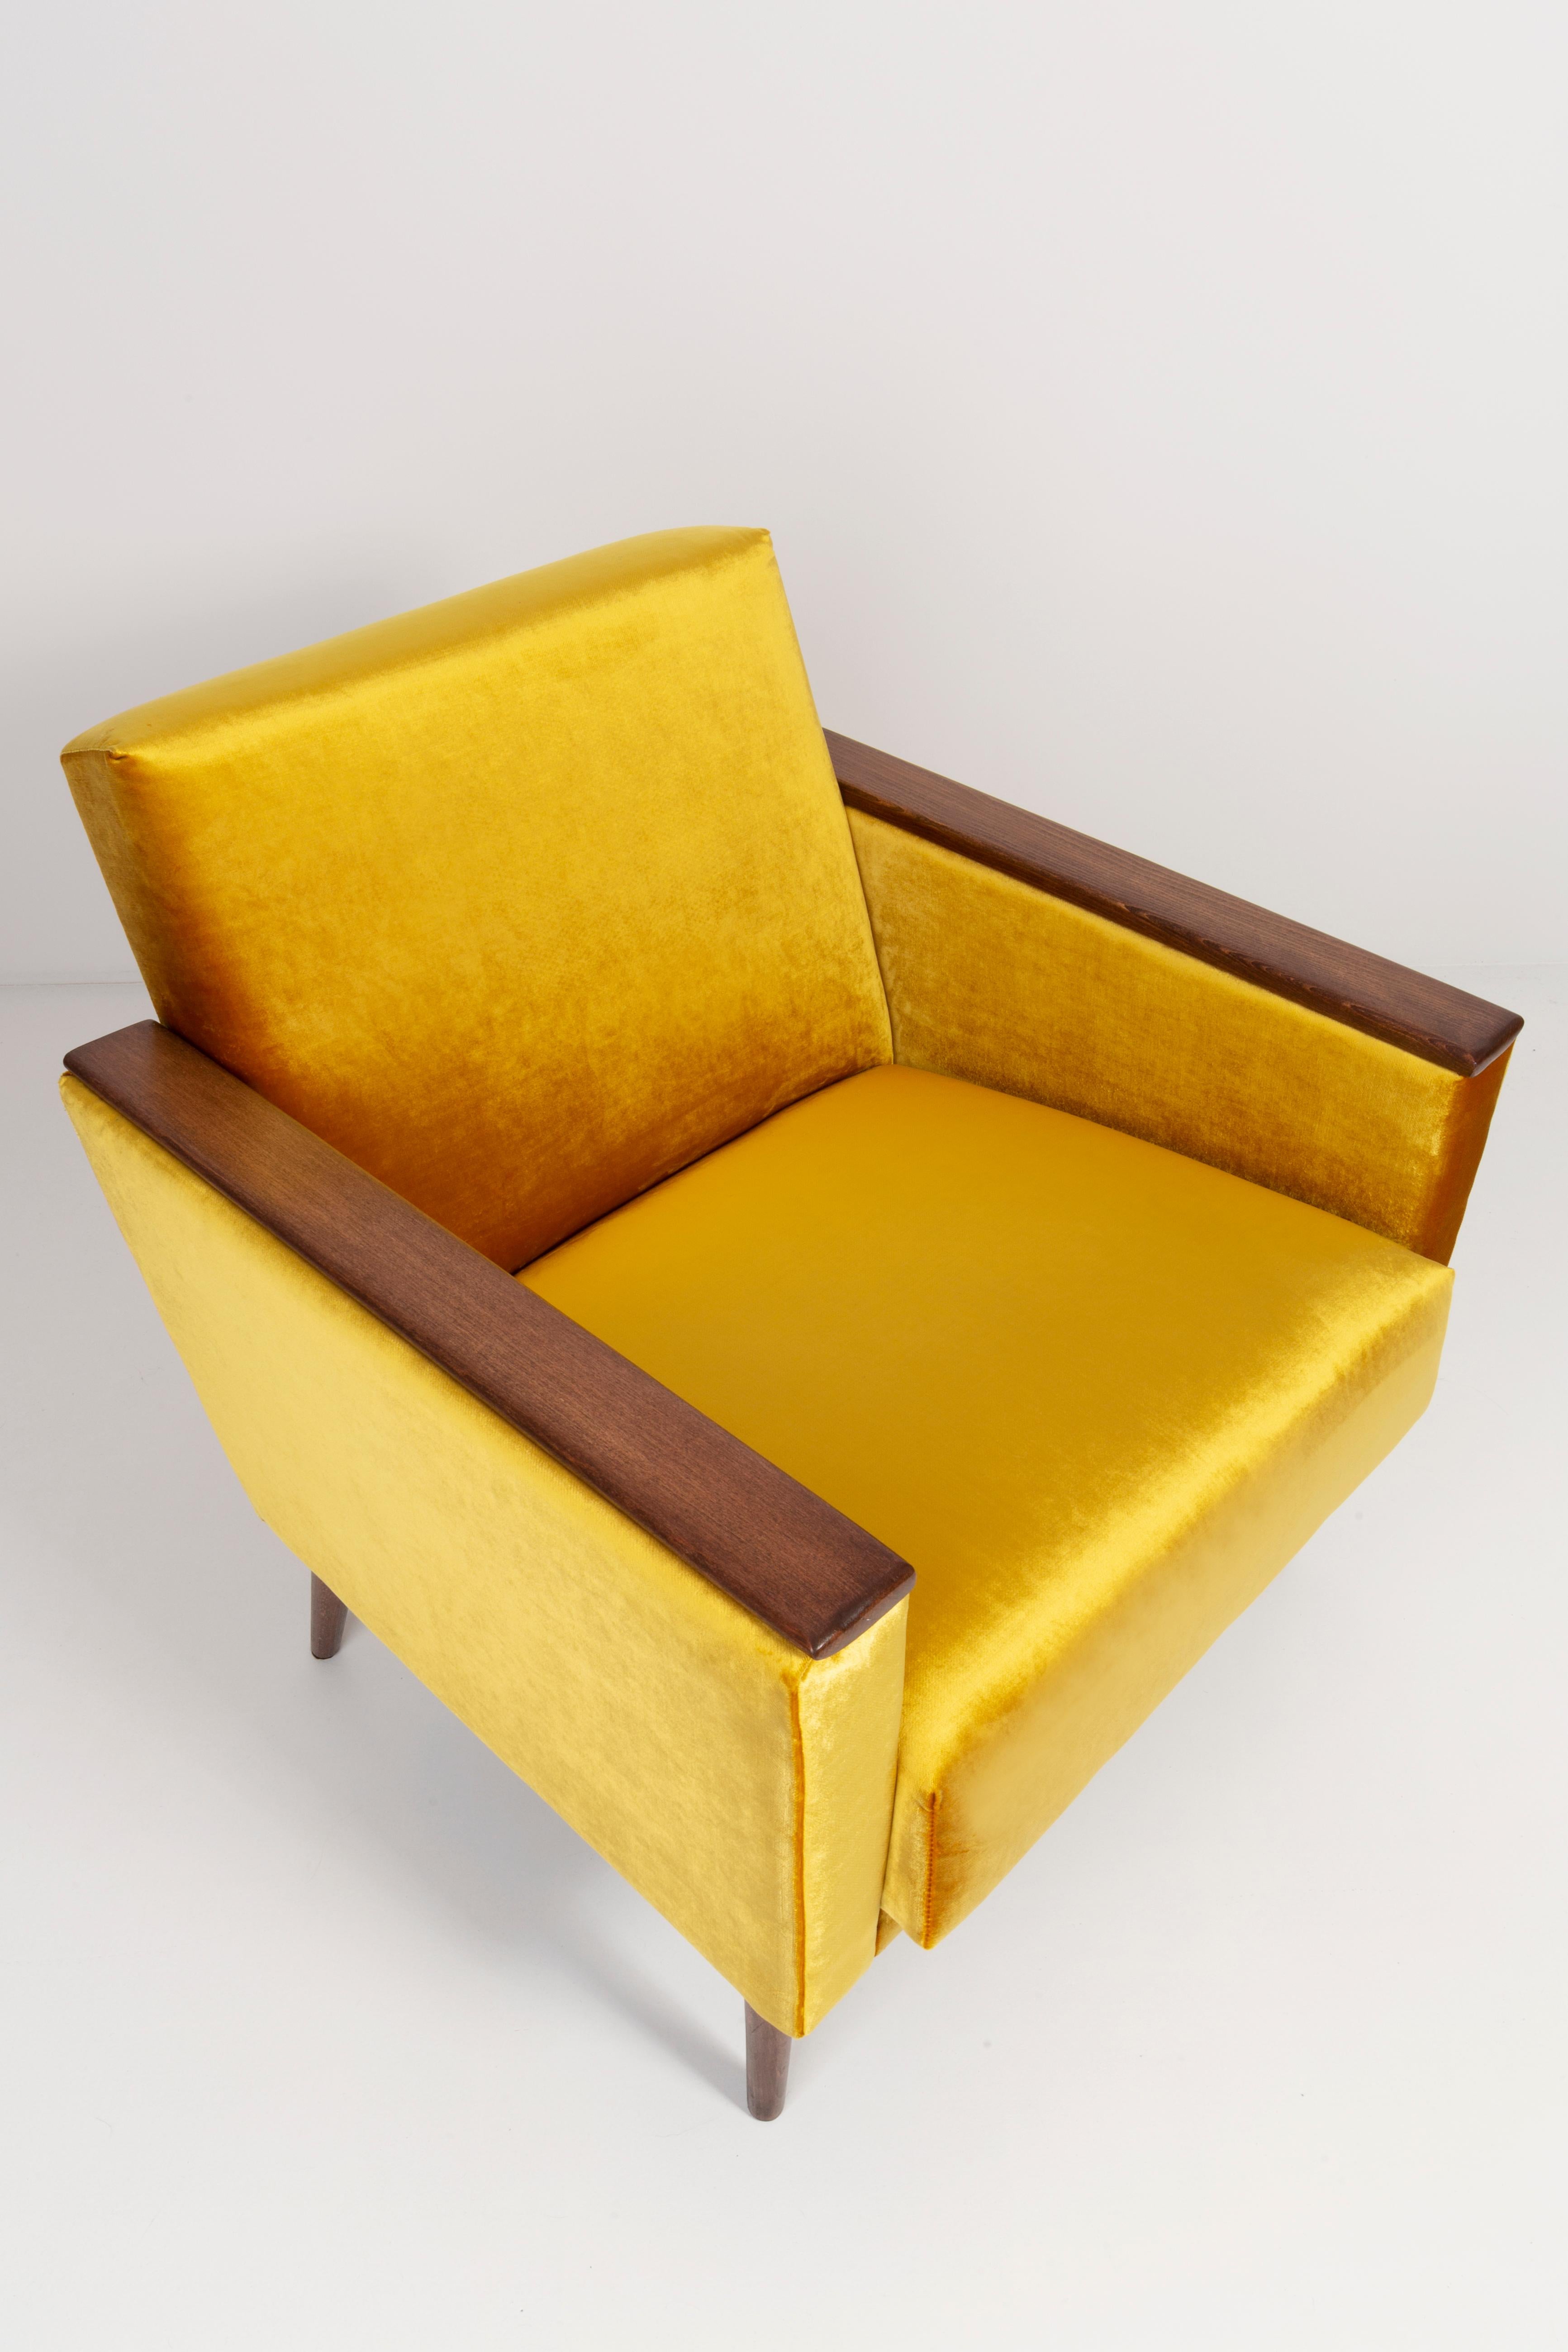 Fauteuil allemand produit dans les années 1960 à Berlin. Le fauteuil est après une rénovation complète de la tapisserie et de la menuiserie. Le cadre en bois est soigneusement nettoyé et recouvert d'un vernis semi-mat de la couleur d'une noix. La